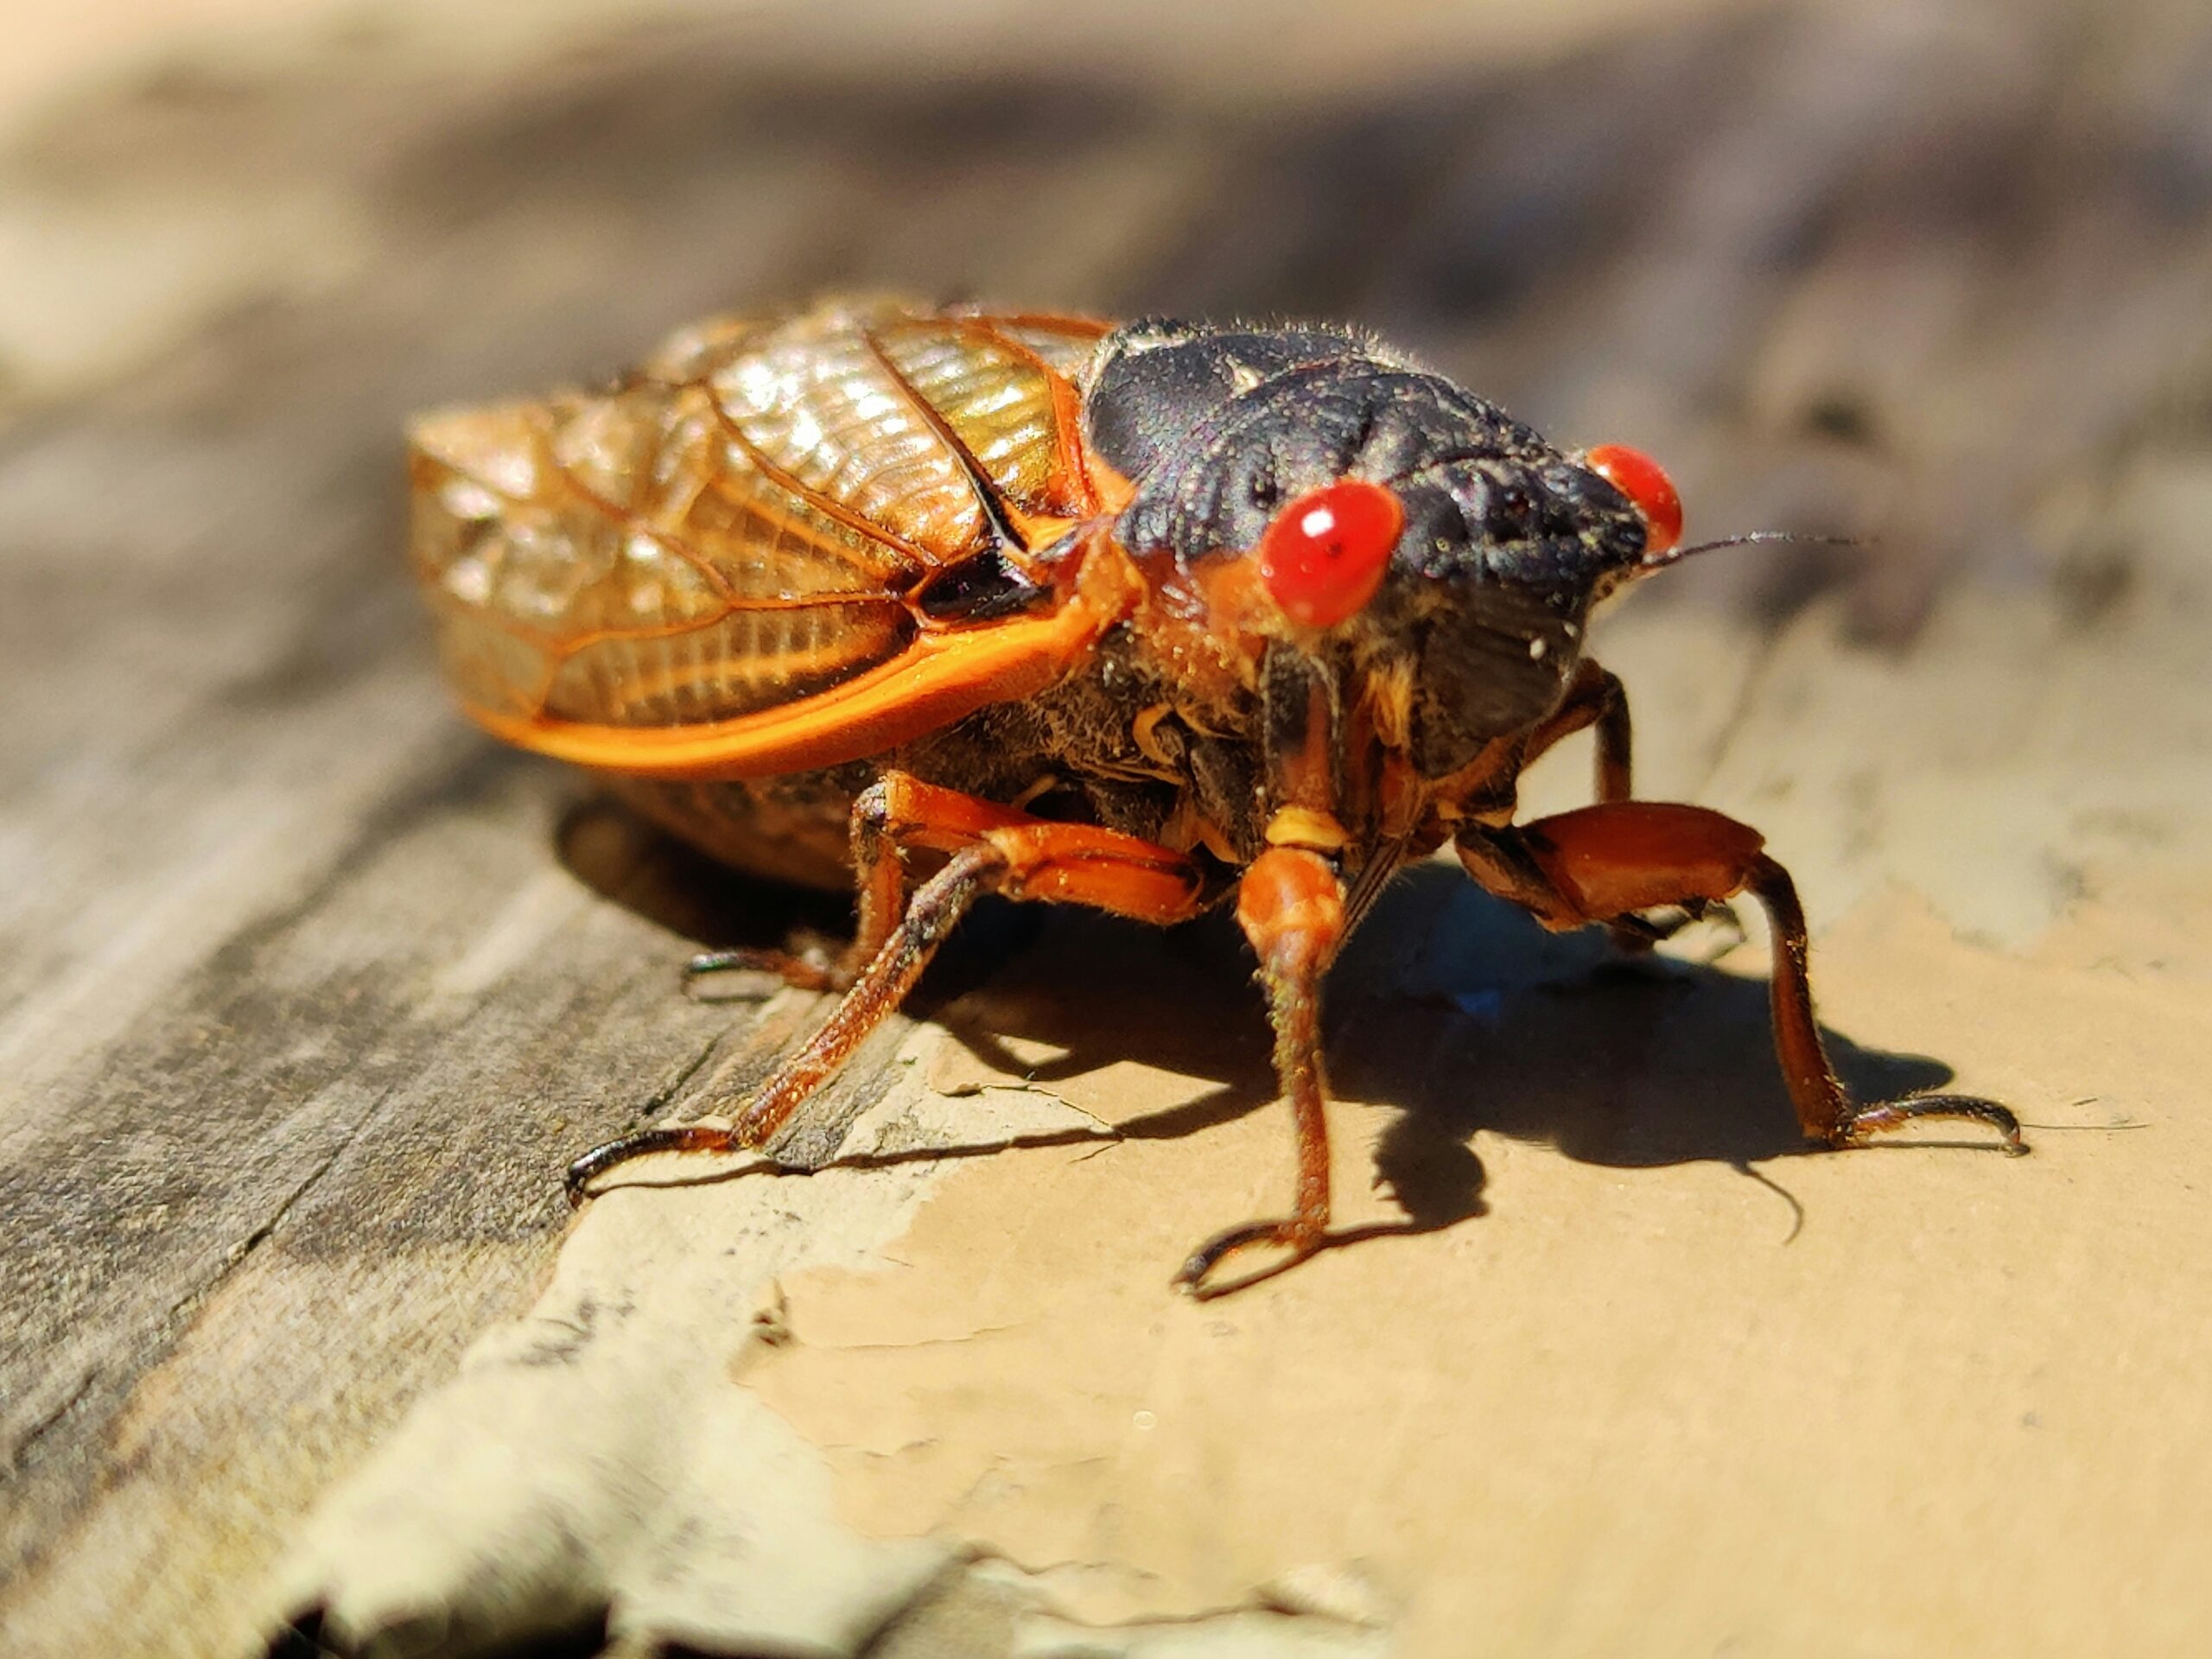 A close up image of a cicada